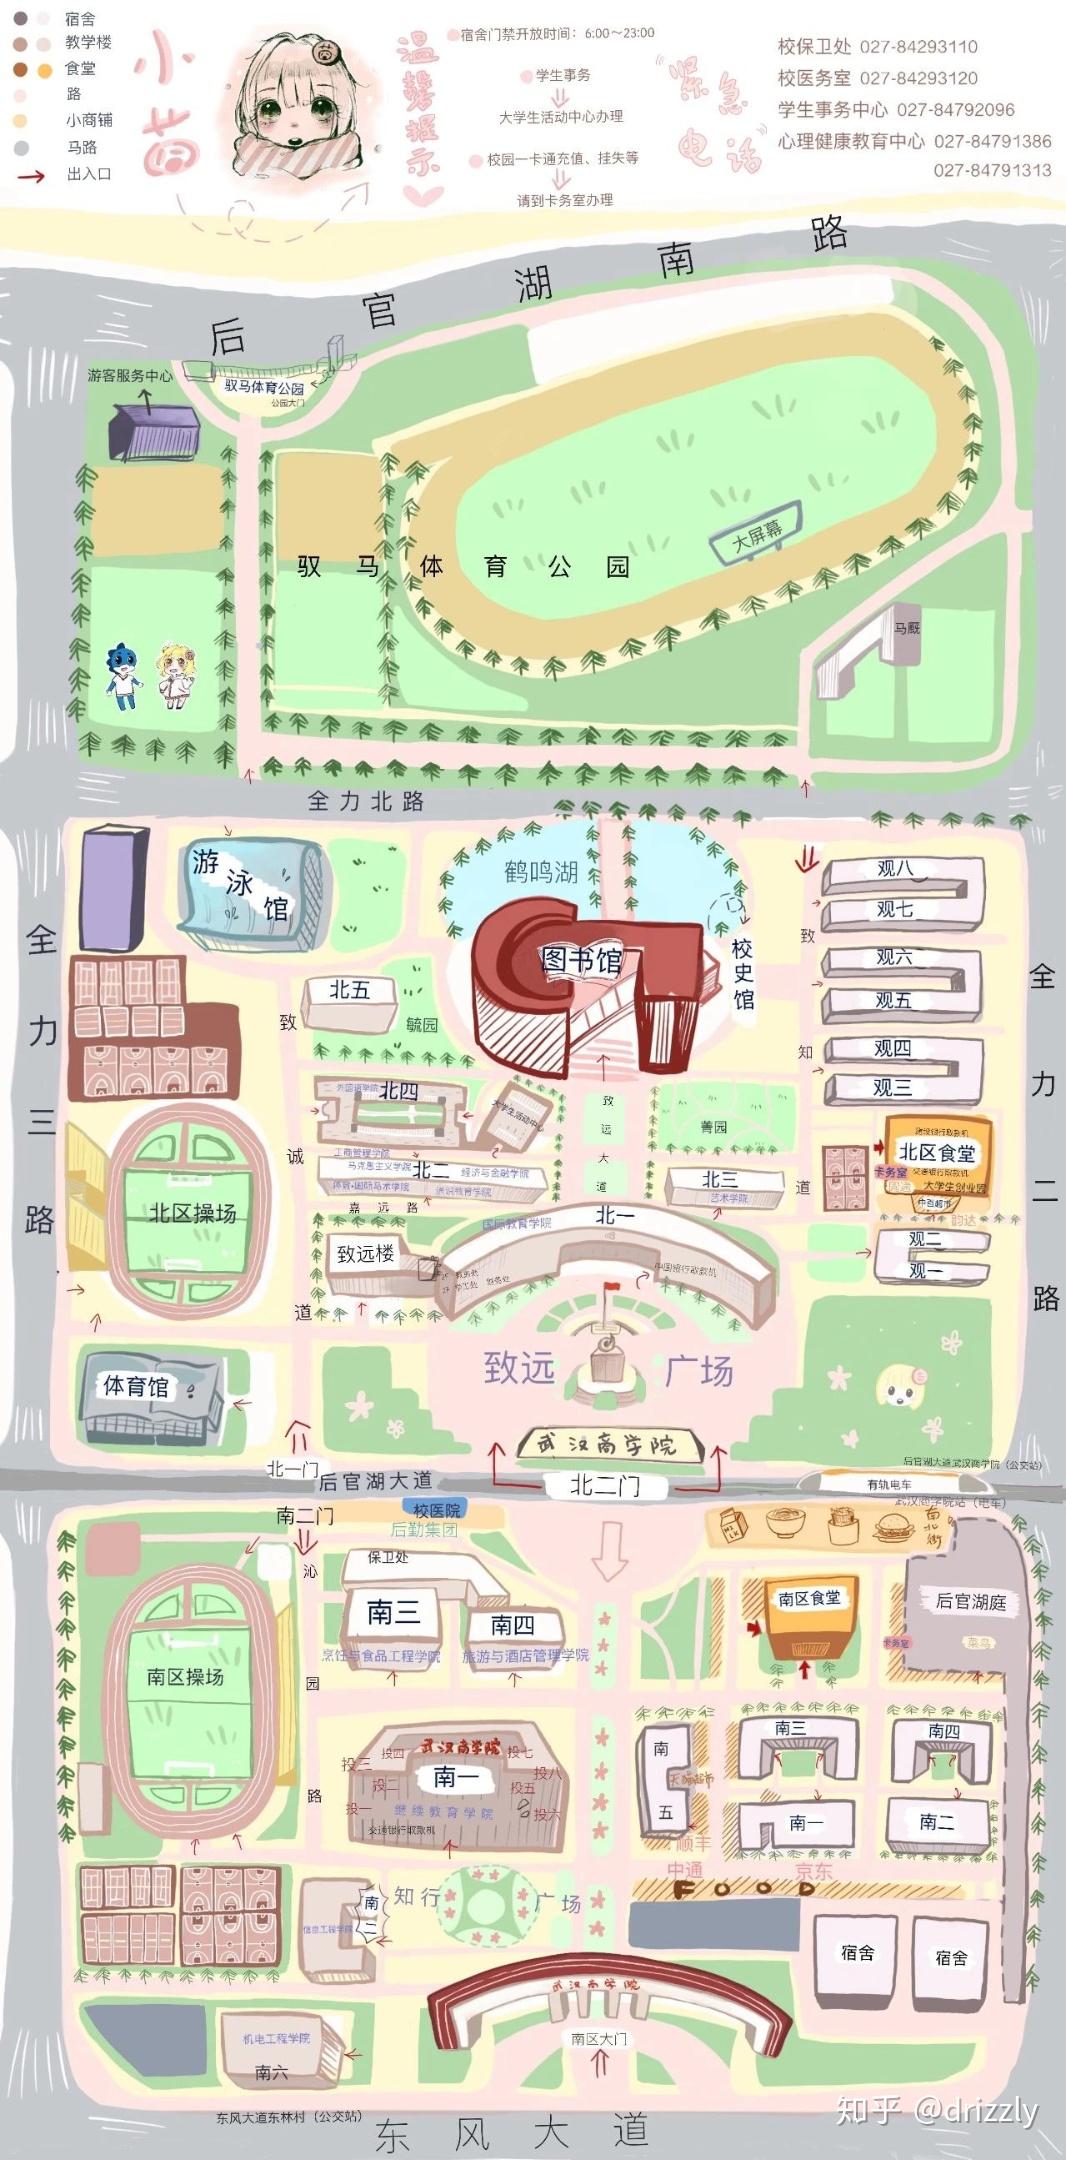 湖北商贸学院校园地图图片